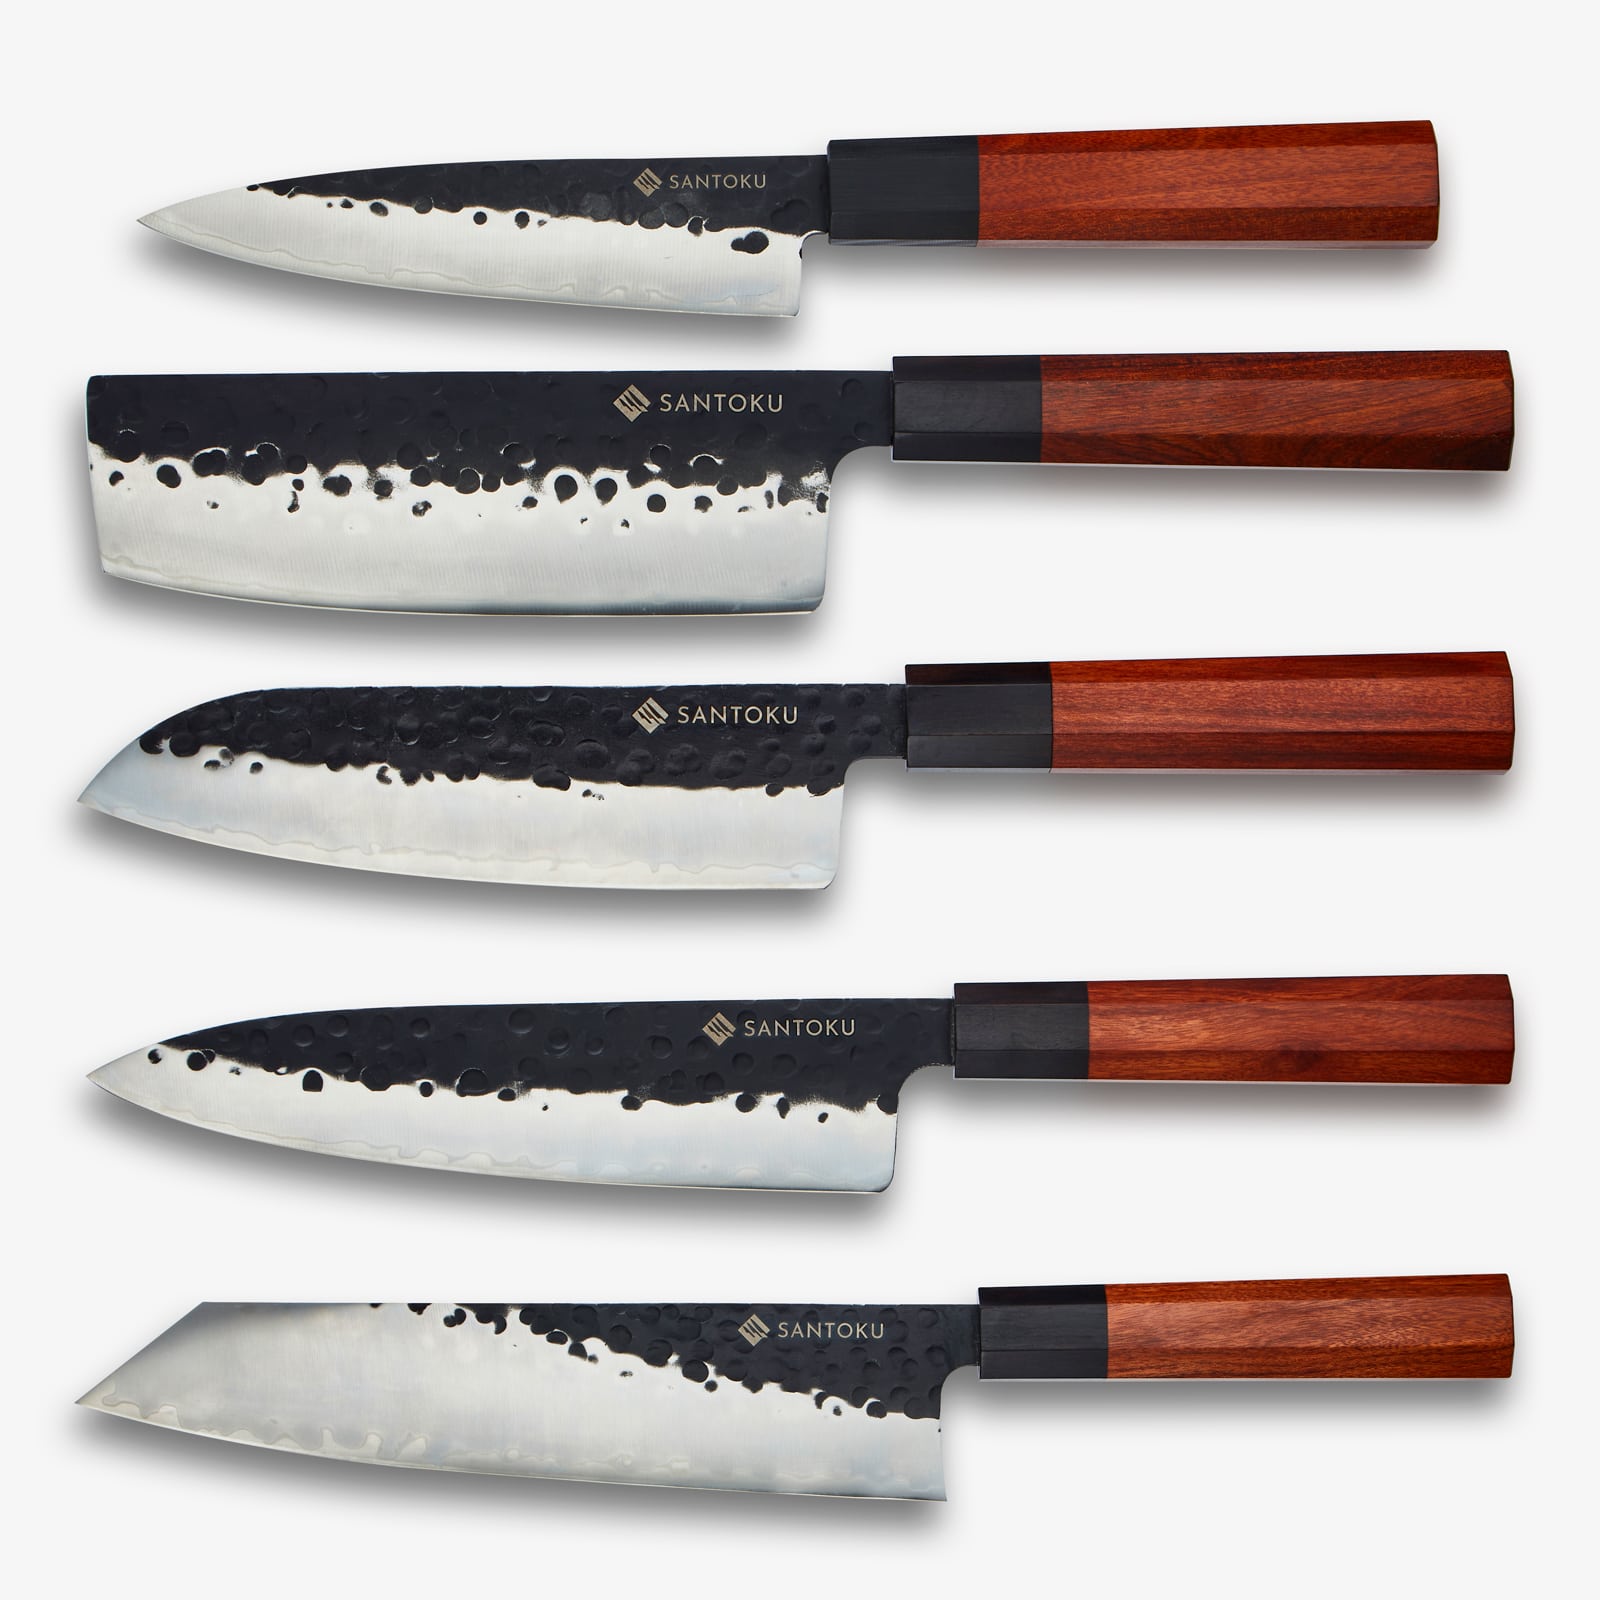 बबूल लकड़ी के चुंबकीय चाकू धारक के साथ मिनाटो चाकू श्रृंखला